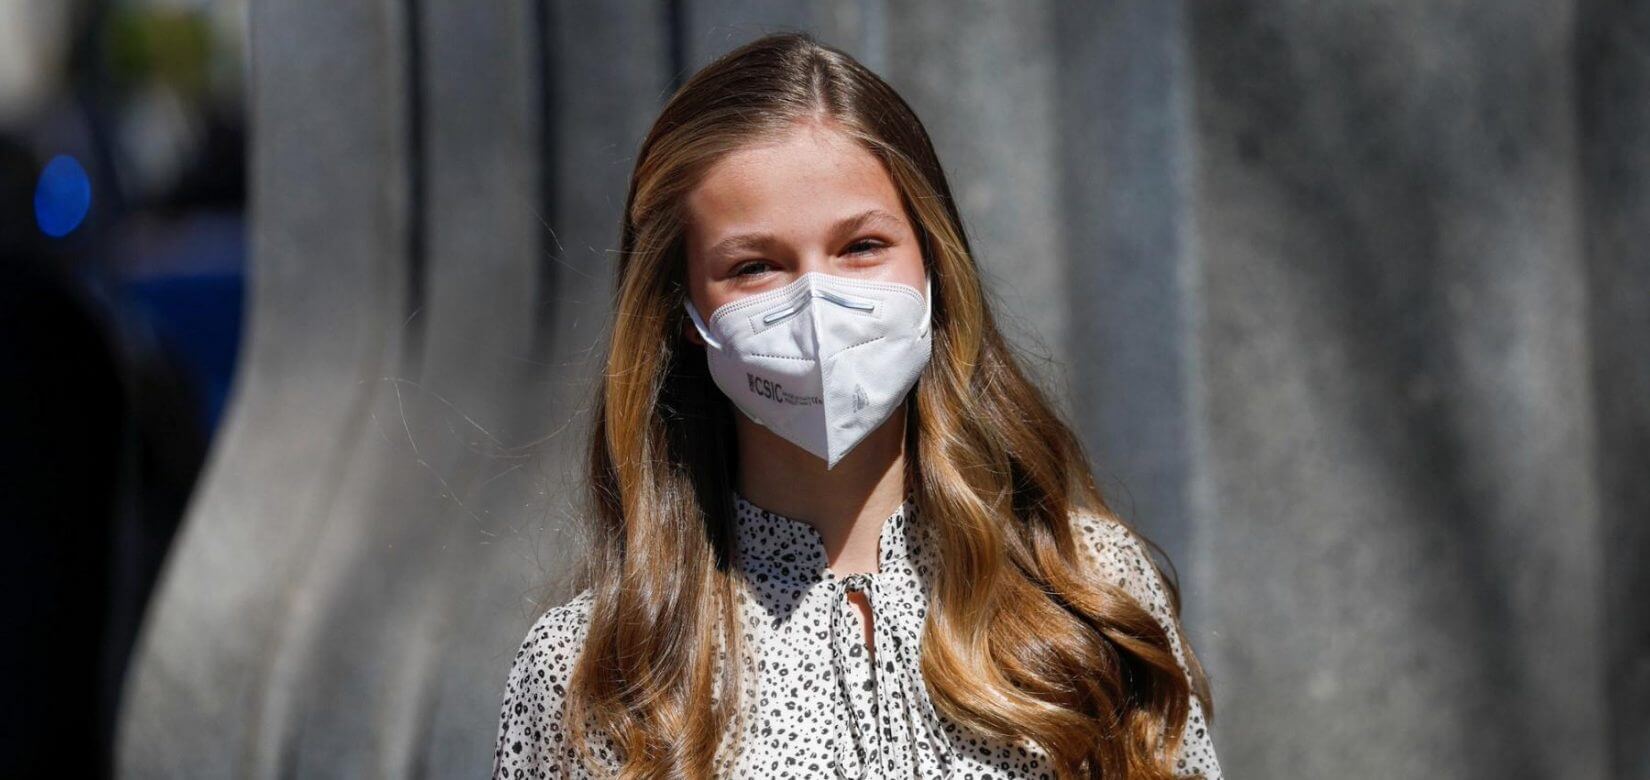 Κορονοϊός: Ο λόγος που εμβολιάστηκε η 15χρονη Λεονόρ, μελλοντική βασίλισσα της Ισπανίας